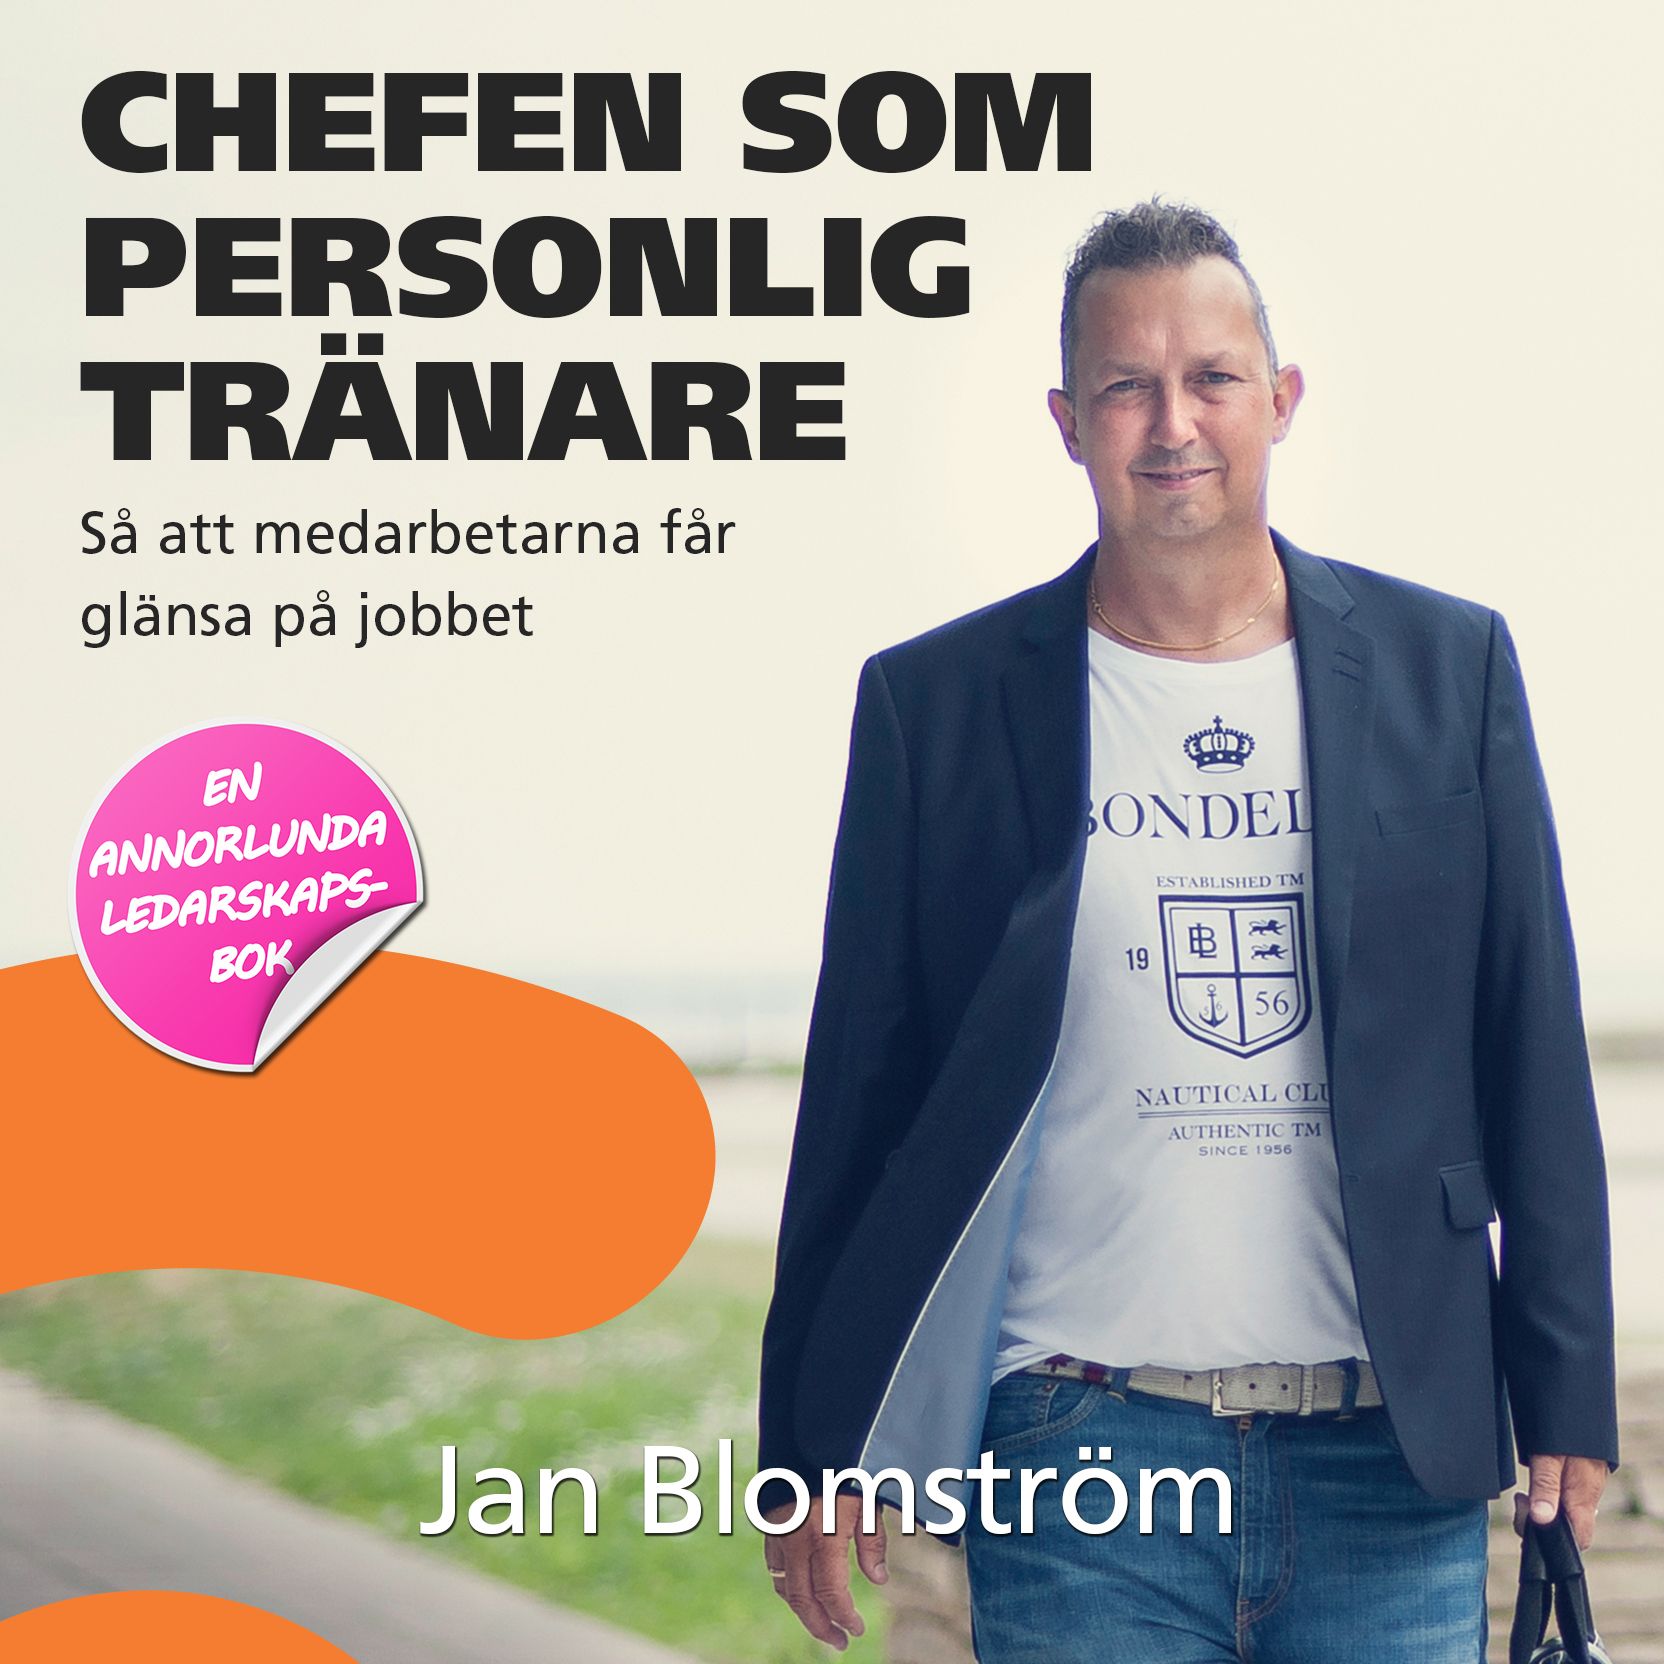 Chefen som personlig tränare, ljudbok av Jan Blomström